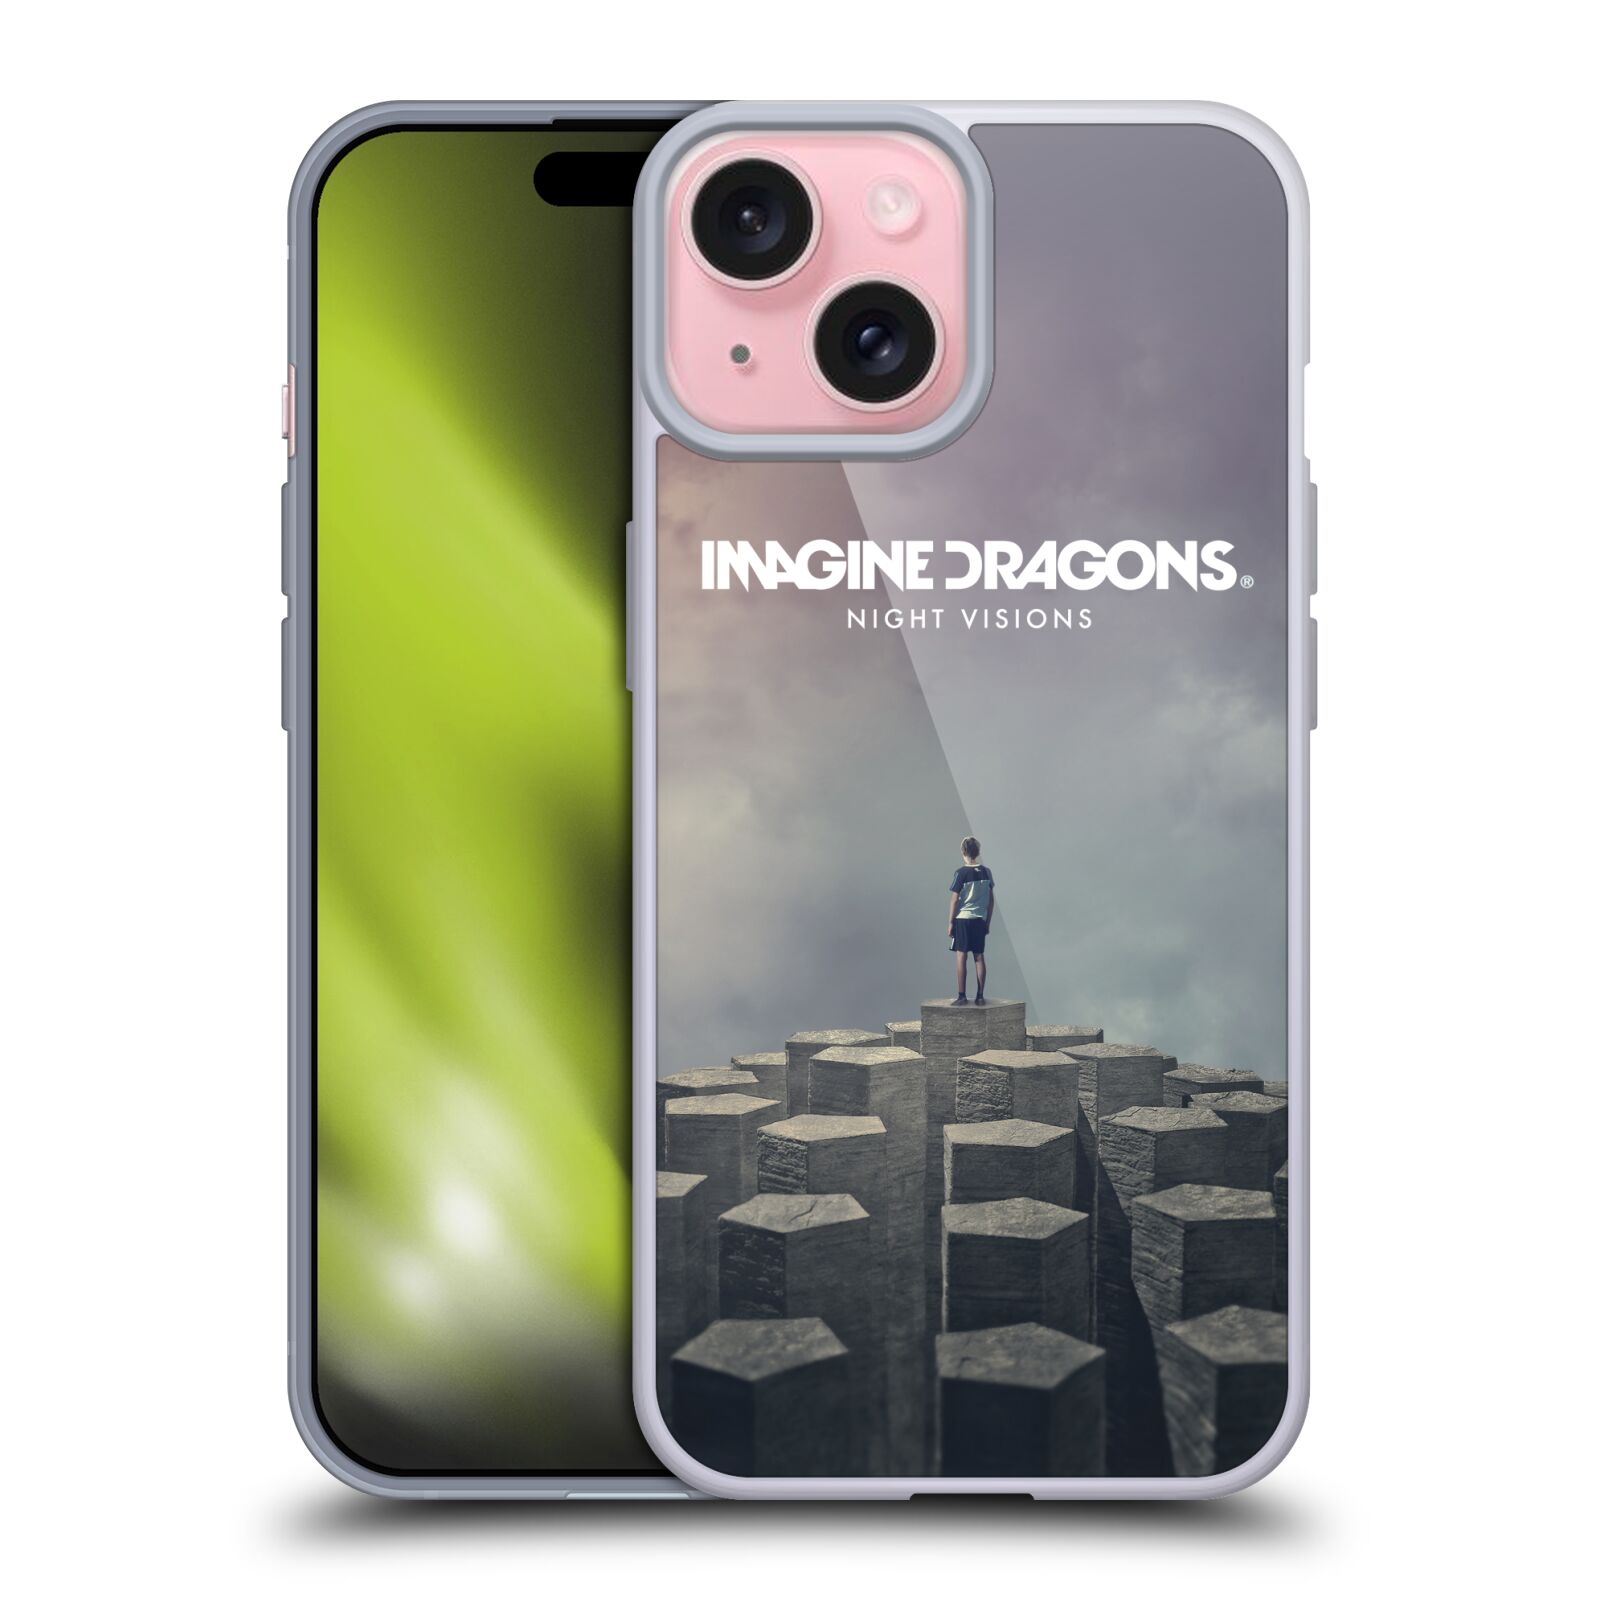 Silikonové lesklé pouzdro na mobil Apple iPhone 15 - Imagine Dragons - Night Visions (Silikonový lesklý kryt, obal, pouzdro na mobilní telefon Apple iPhone 15 s licencovaným motivem Imagine Dragons - Night Visions)